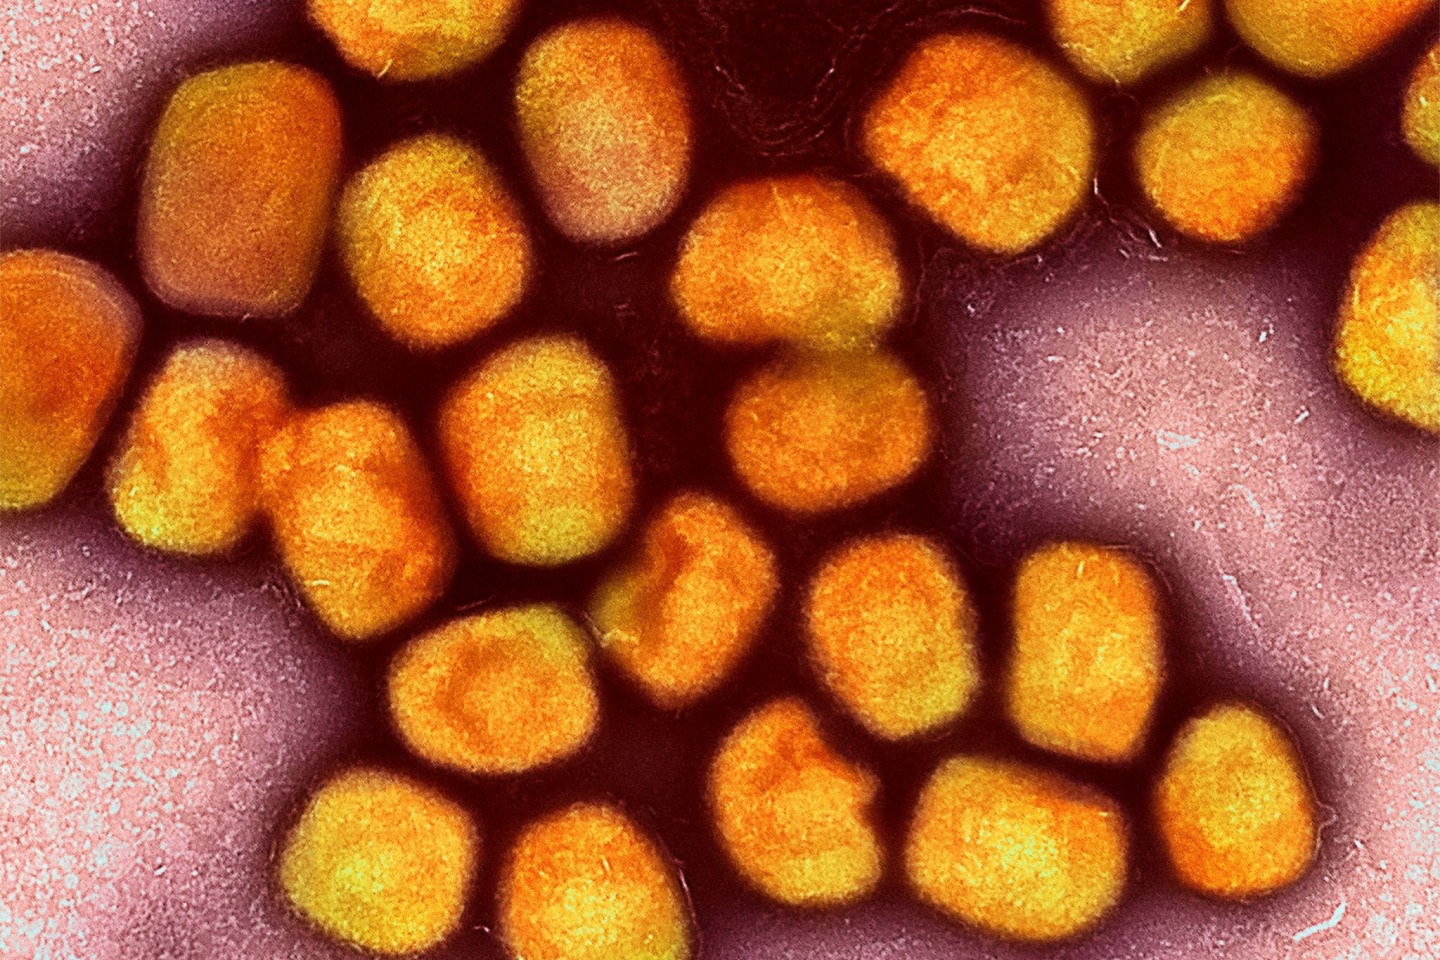 Eine kolorierte ektronenmikroskopische Aufnahme von Partikeln des Affenpockenvirus (Gold), kultiviert und gereinigt aus einer Zellkultur.